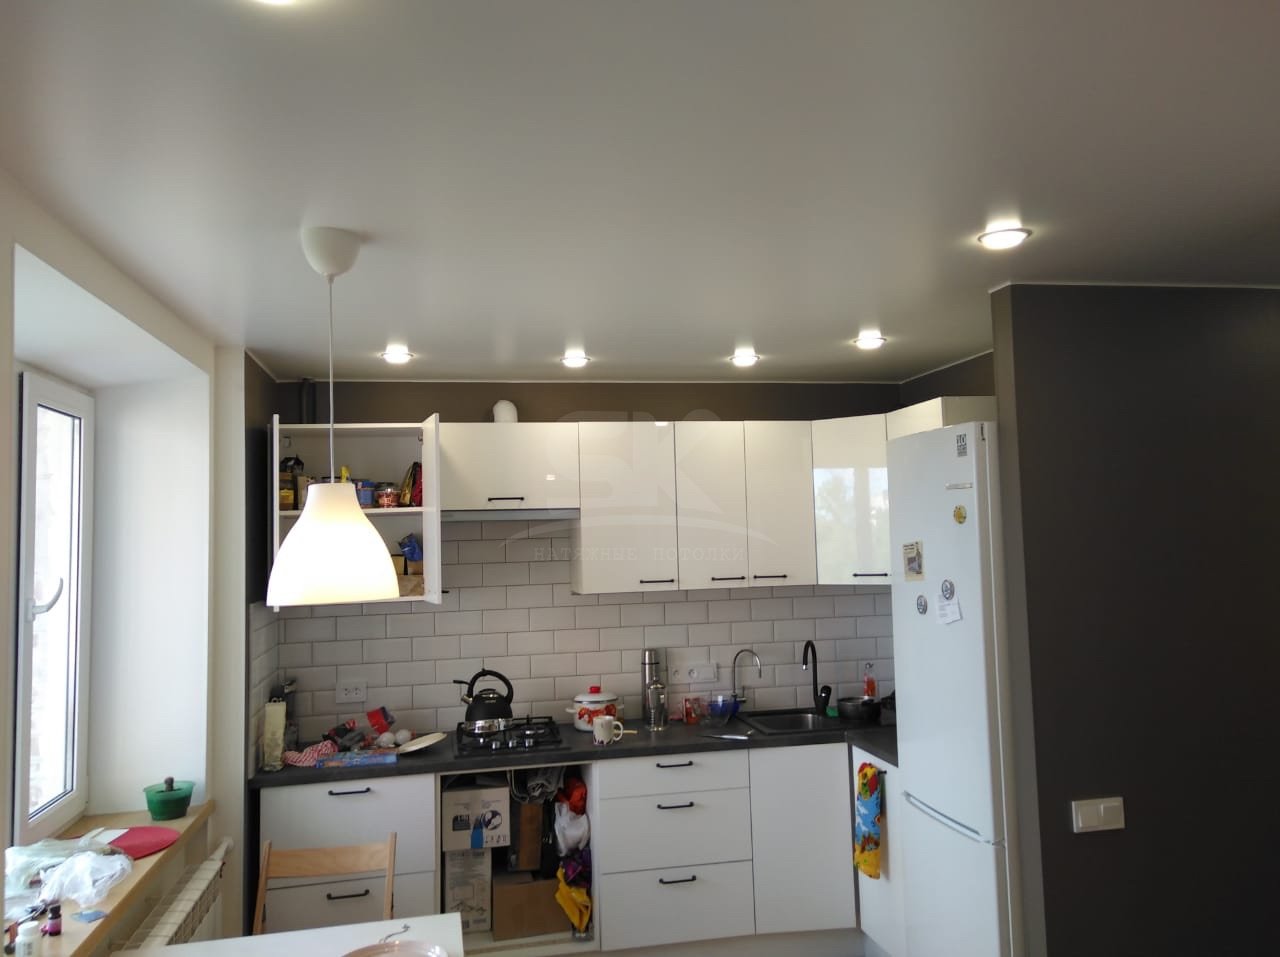 расположение лампочек на потолке на кухне